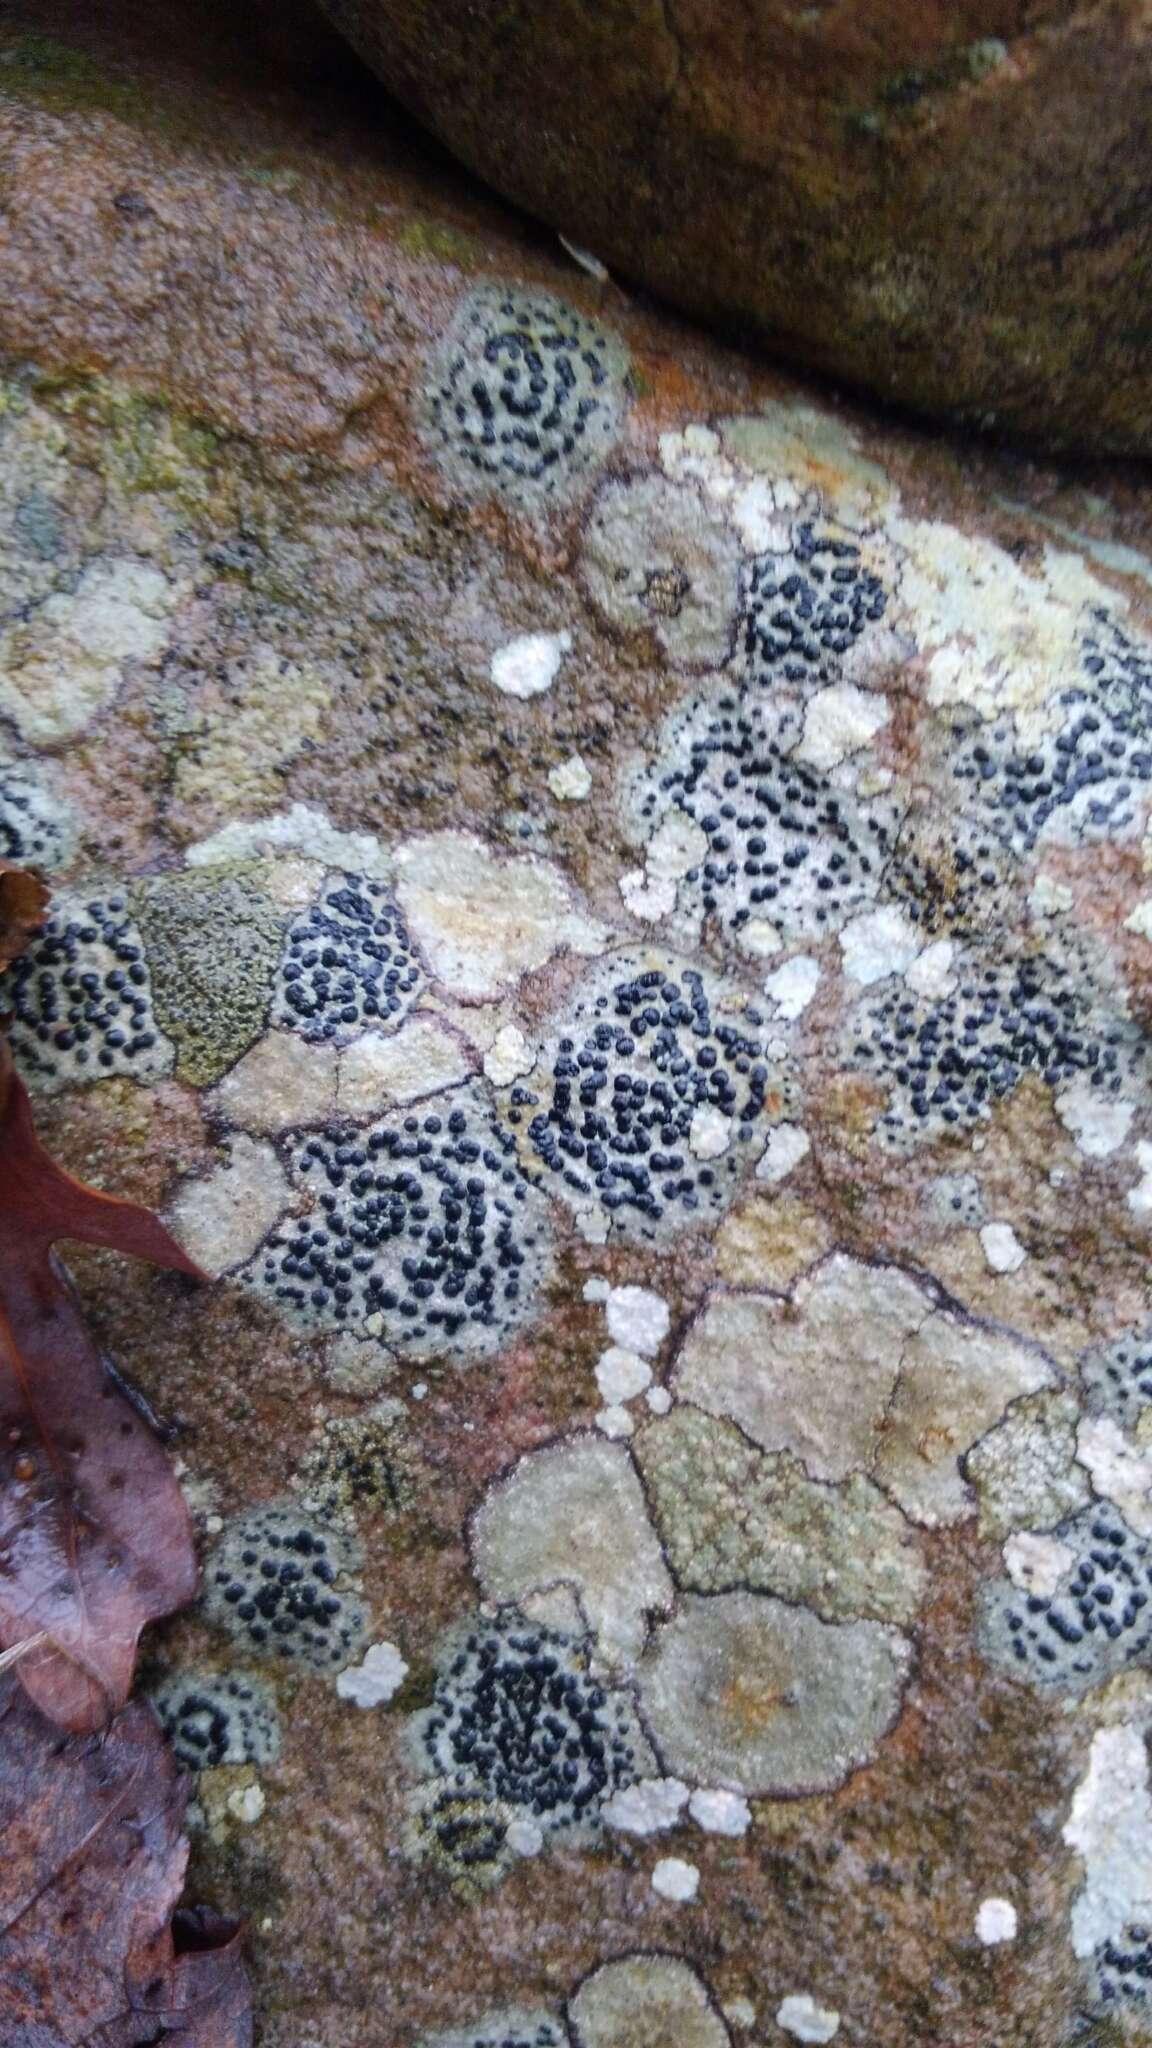 Image of crust porpidia lichen